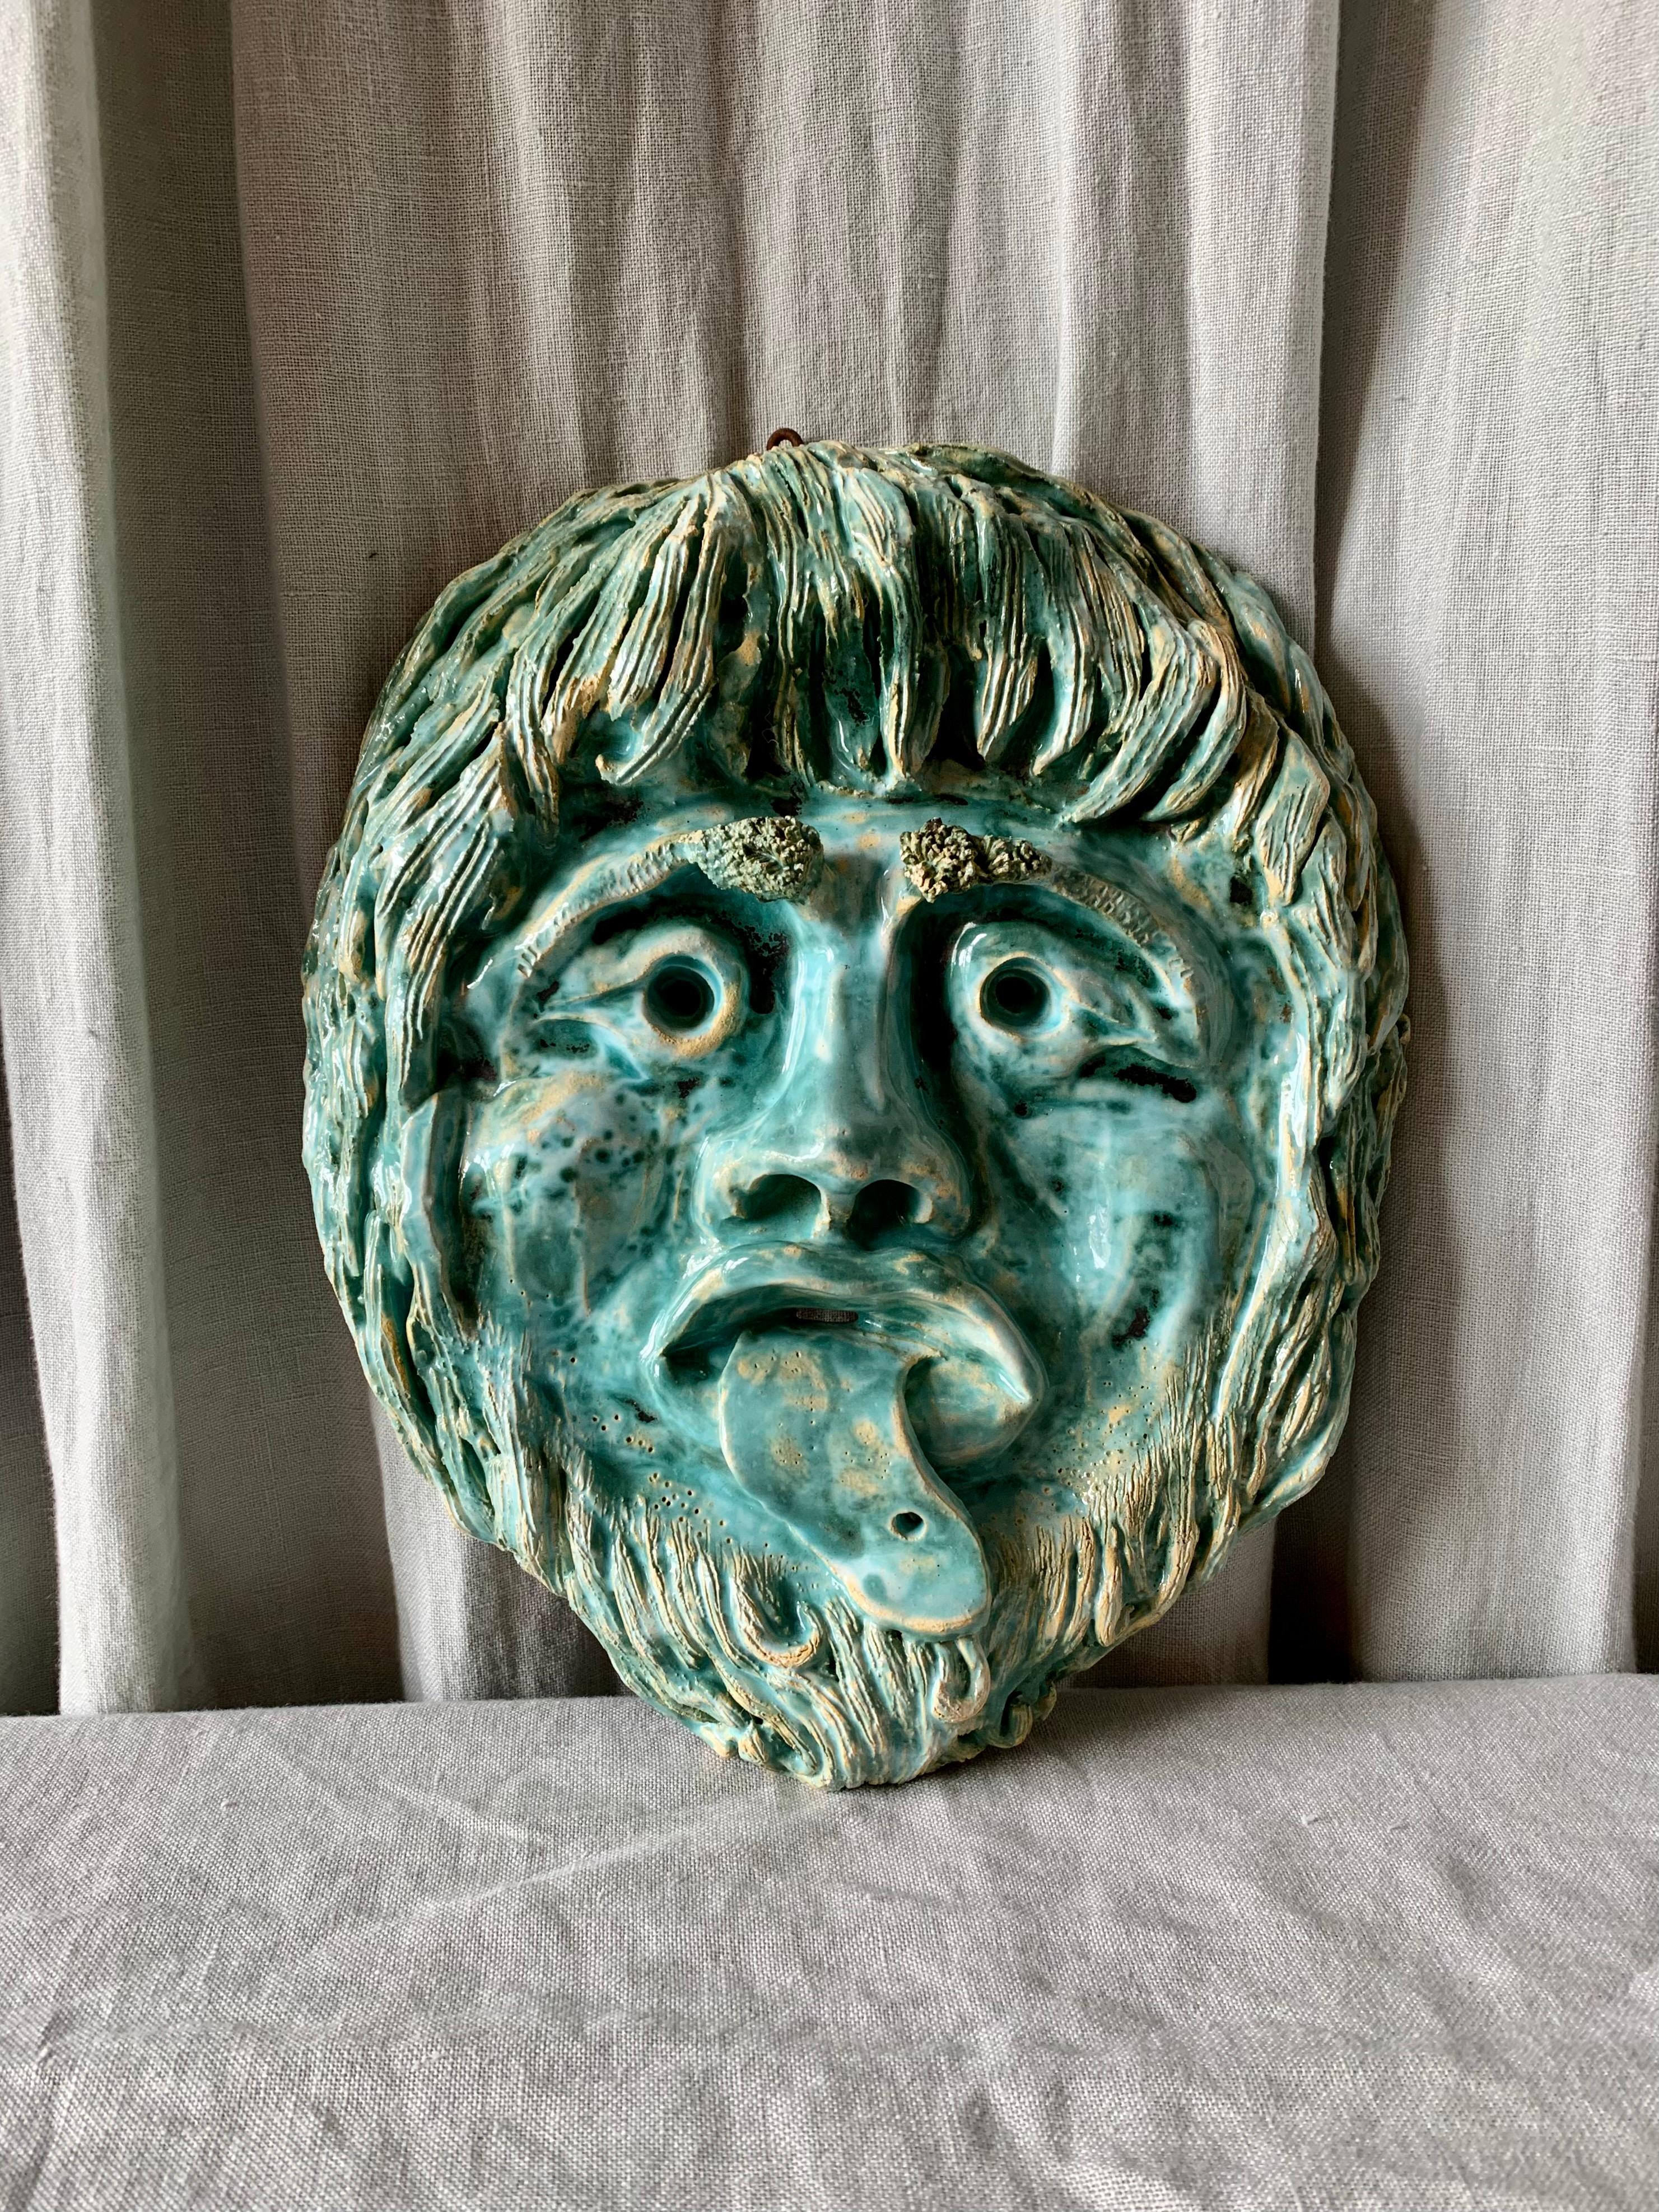 Masque français vintage en céramique avec une expression dramatique du visage - à accrocher au mur. De belles nuances de bleu et de vert comme dans une aquarelle.  

